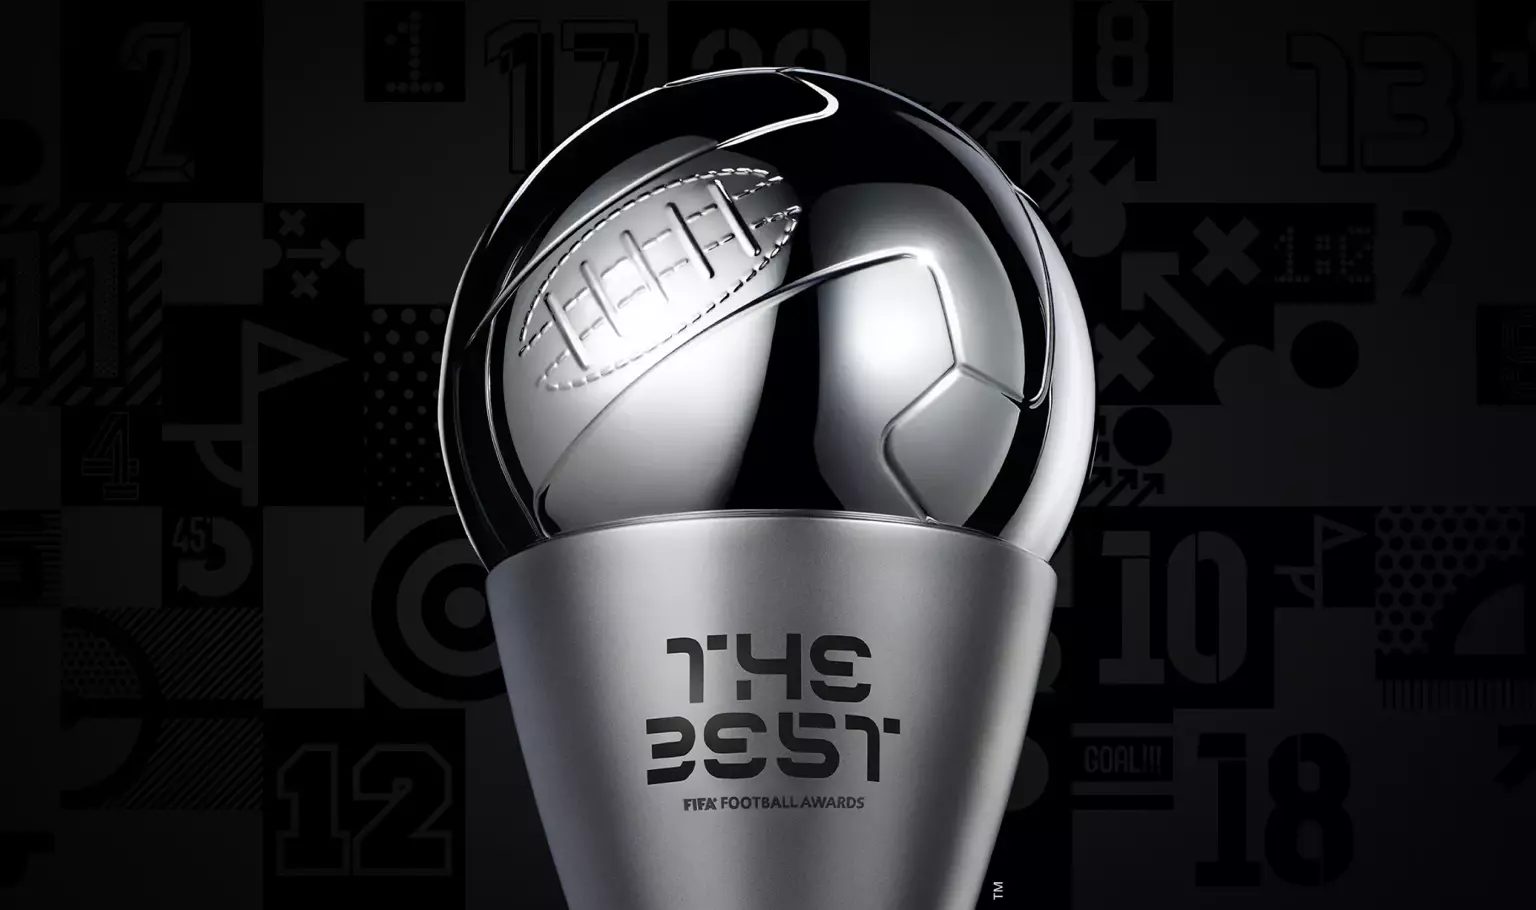 Fifa divulga lista dos indicados ao Prêmio The Best - Foto: Reprodução/ Fifa